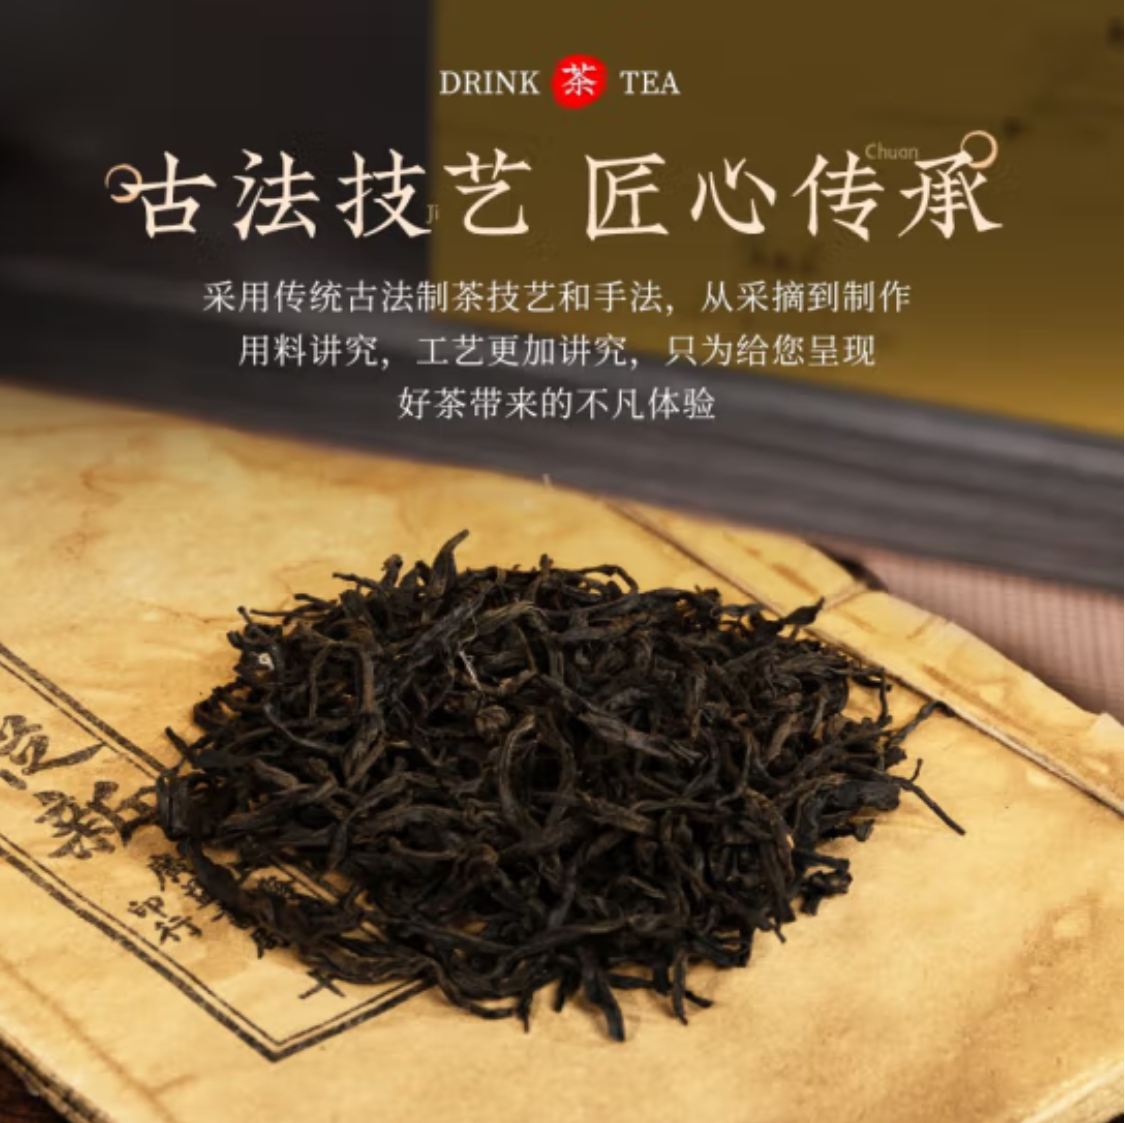 Chinese Black Tea- Yuanhang Black Tea